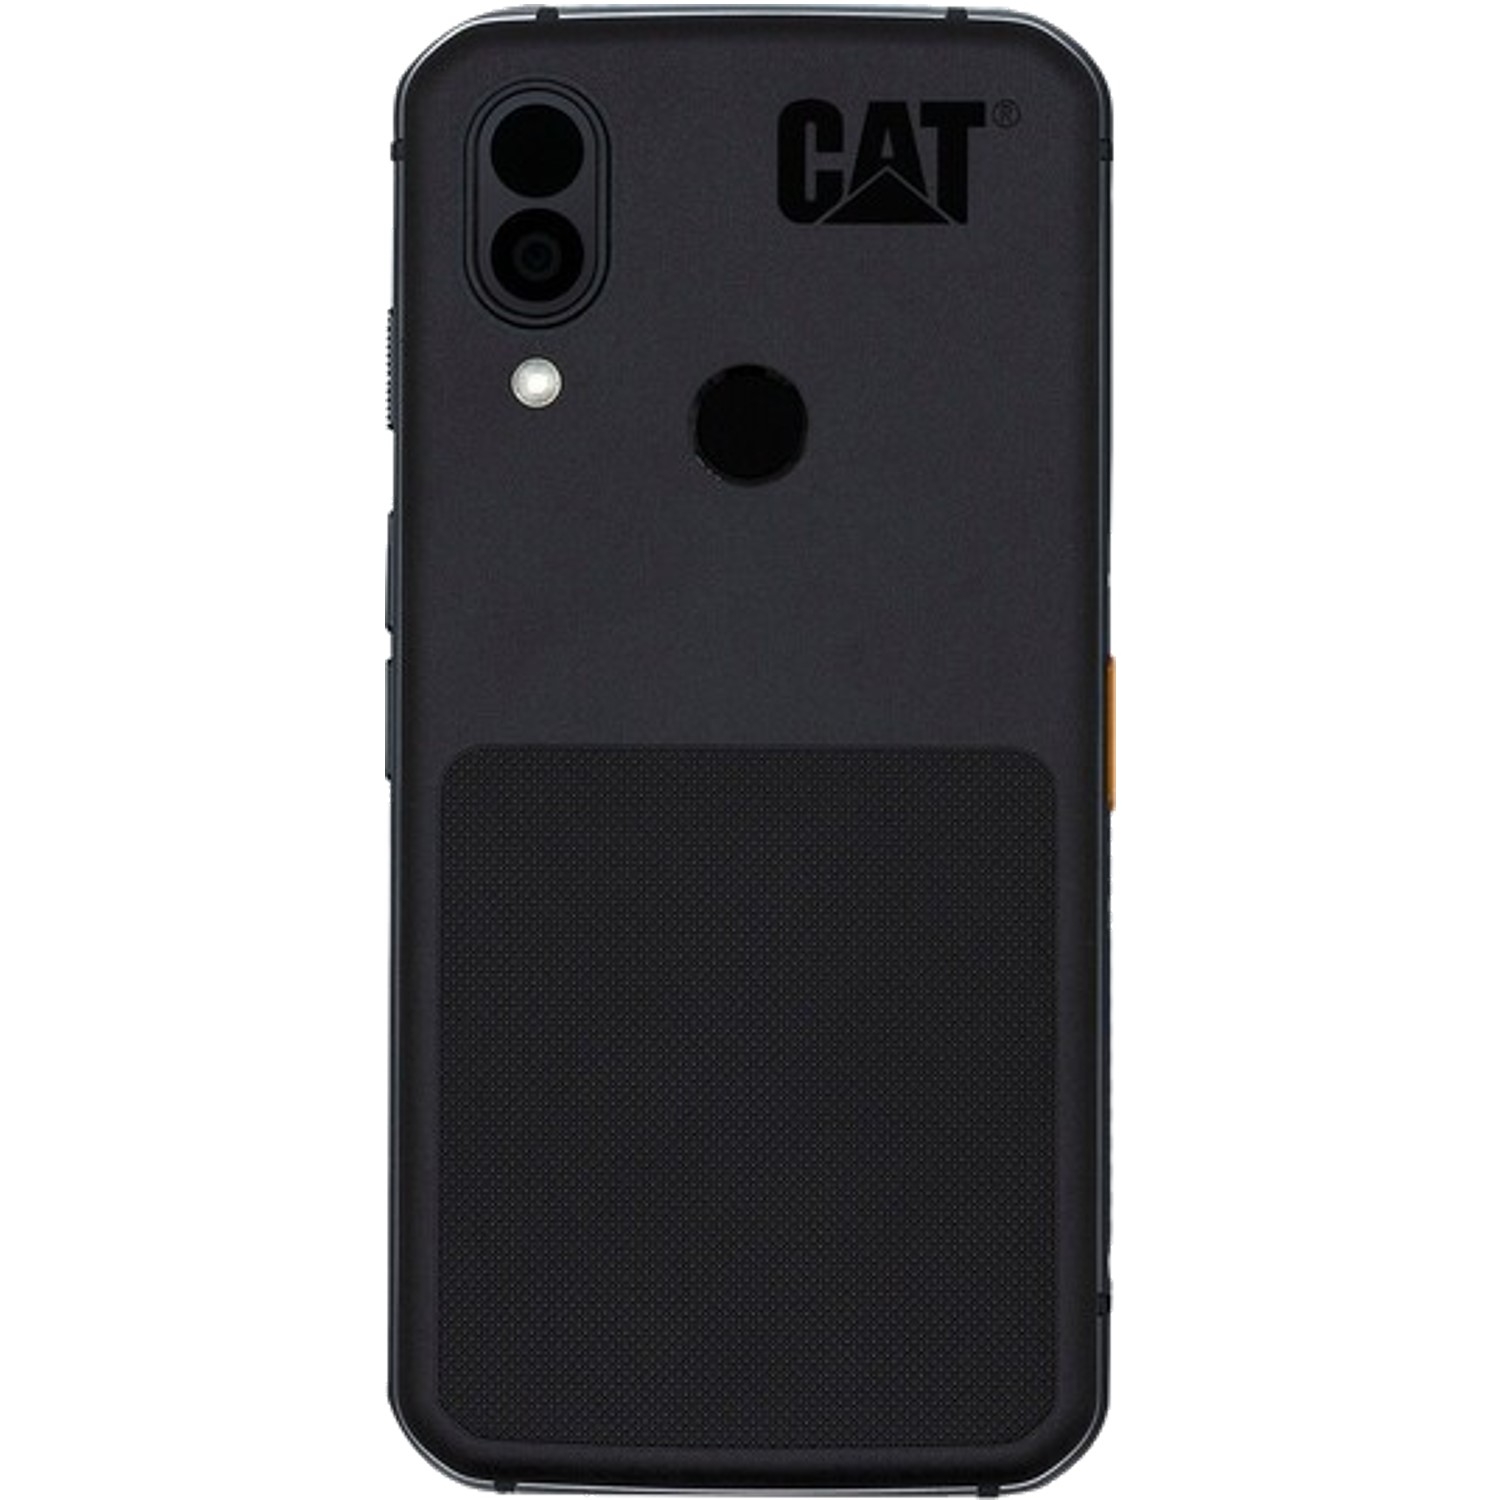 موبايل جوال كات اس 62 برو رامات 6 جيجا – 128 جيجا تخزين Cat S62 Pro Smartphone